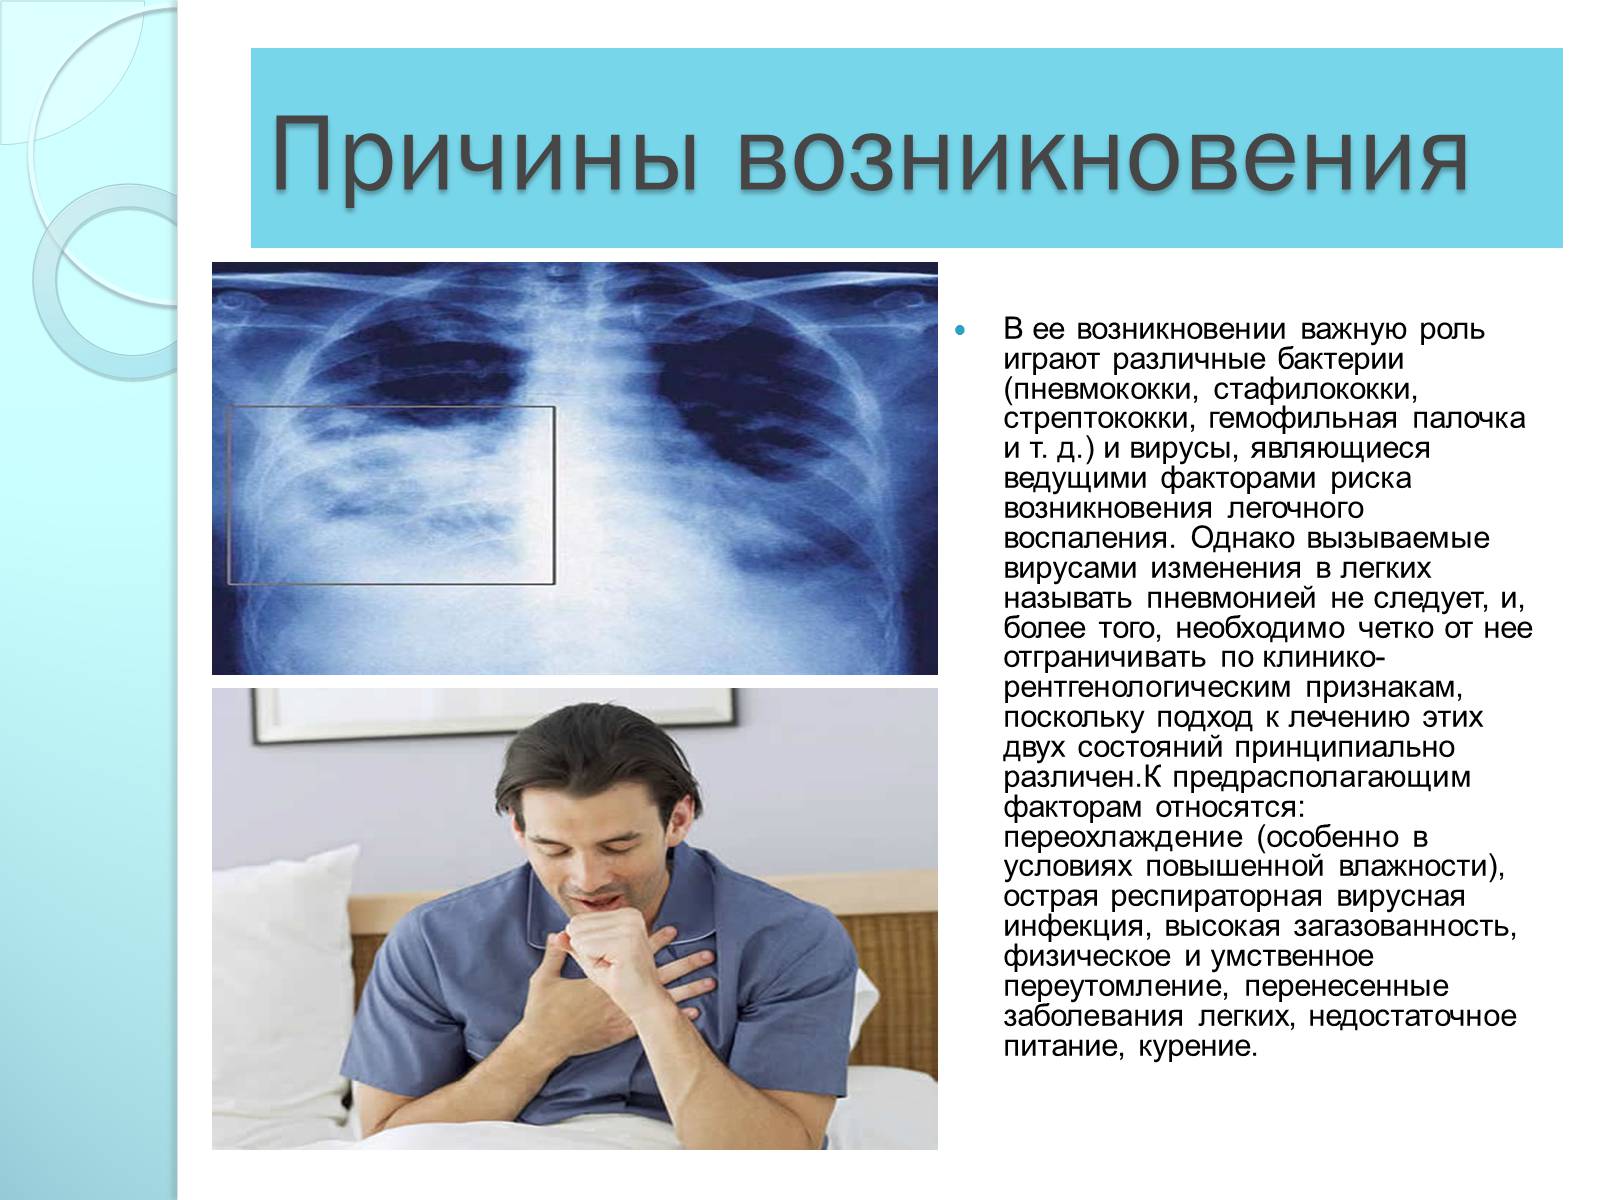 Причины возникновения заболеваний организма. Пневмония причины возникновения. Заболевания дыхательной системы презентация. Презентация на тему болезни органов дыхания. Причины возникновения заболеваний.